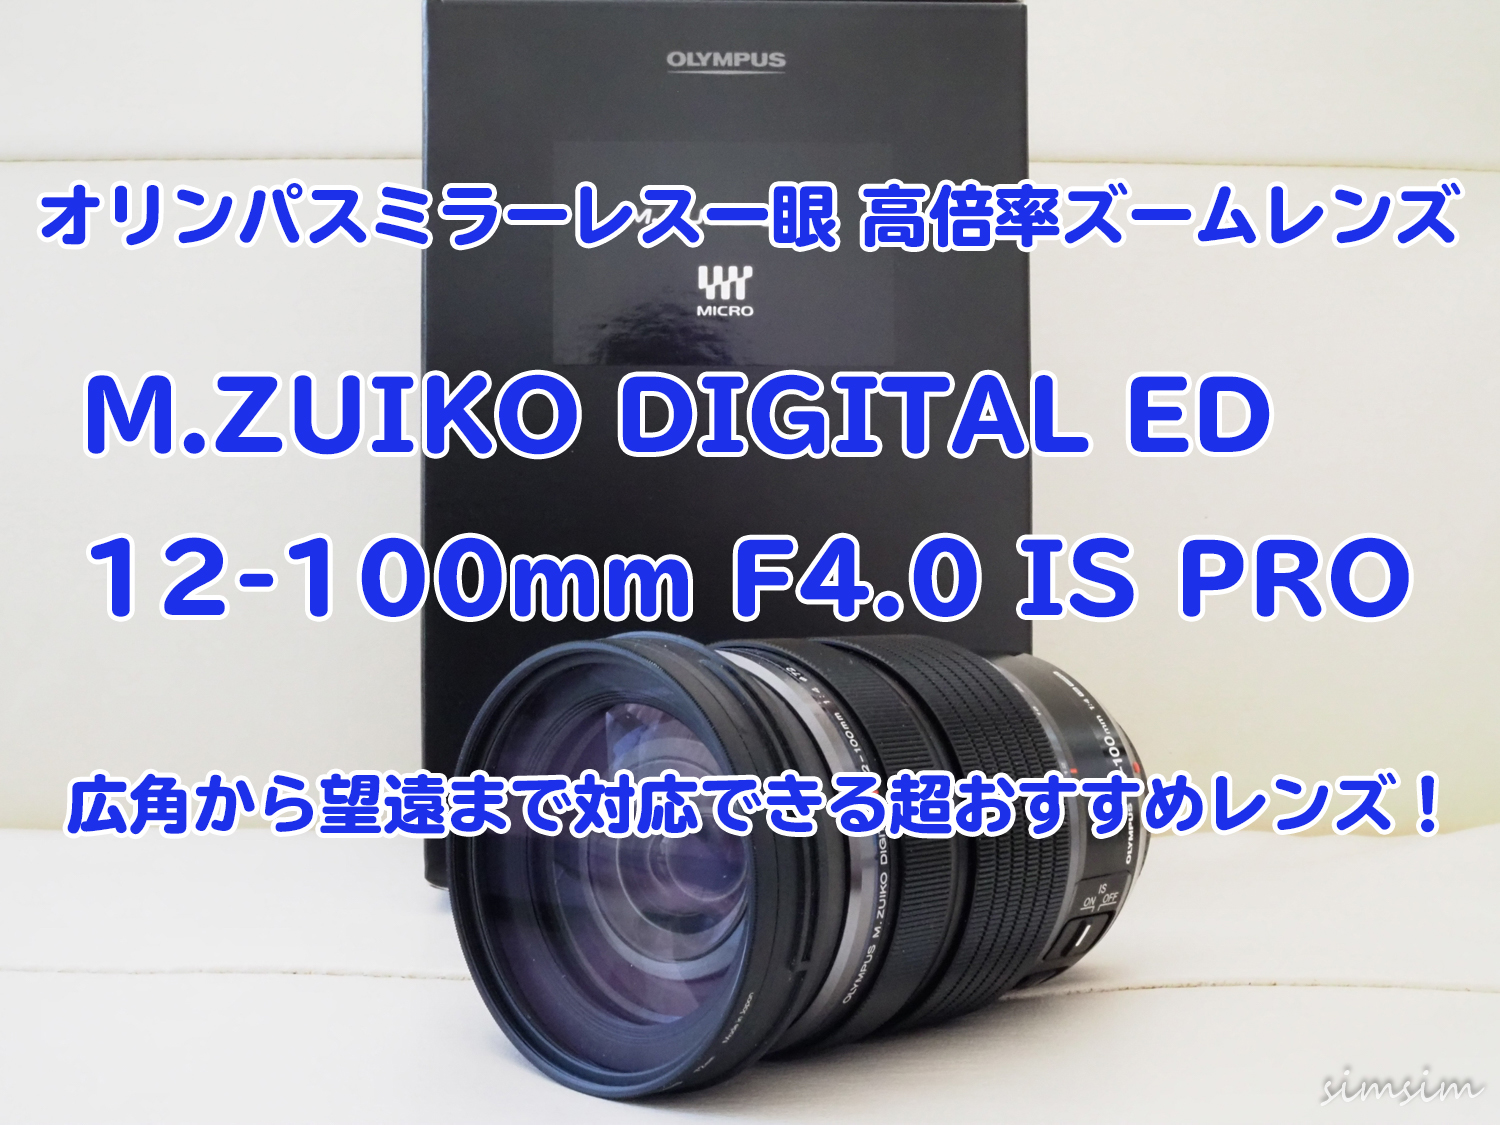 オリンパスの超おすすめ交換レンズ「M.ZUIKO DIGITAL ED 12-100mm F4.0 